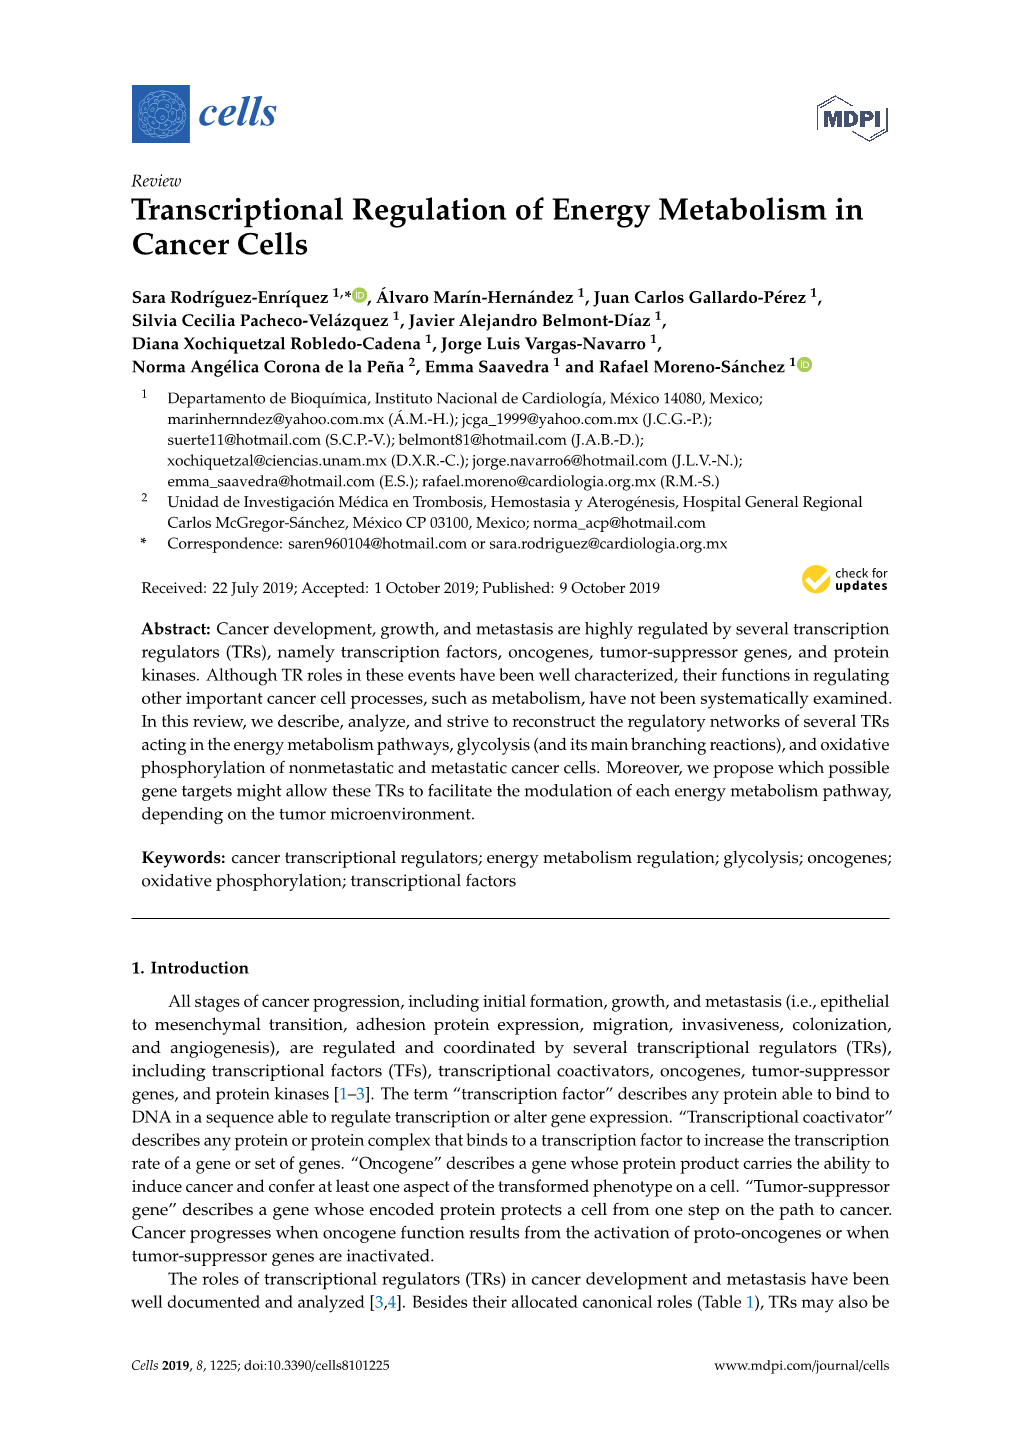 Transcriptional Regulation of Energy Metabolism in Cancer Cells